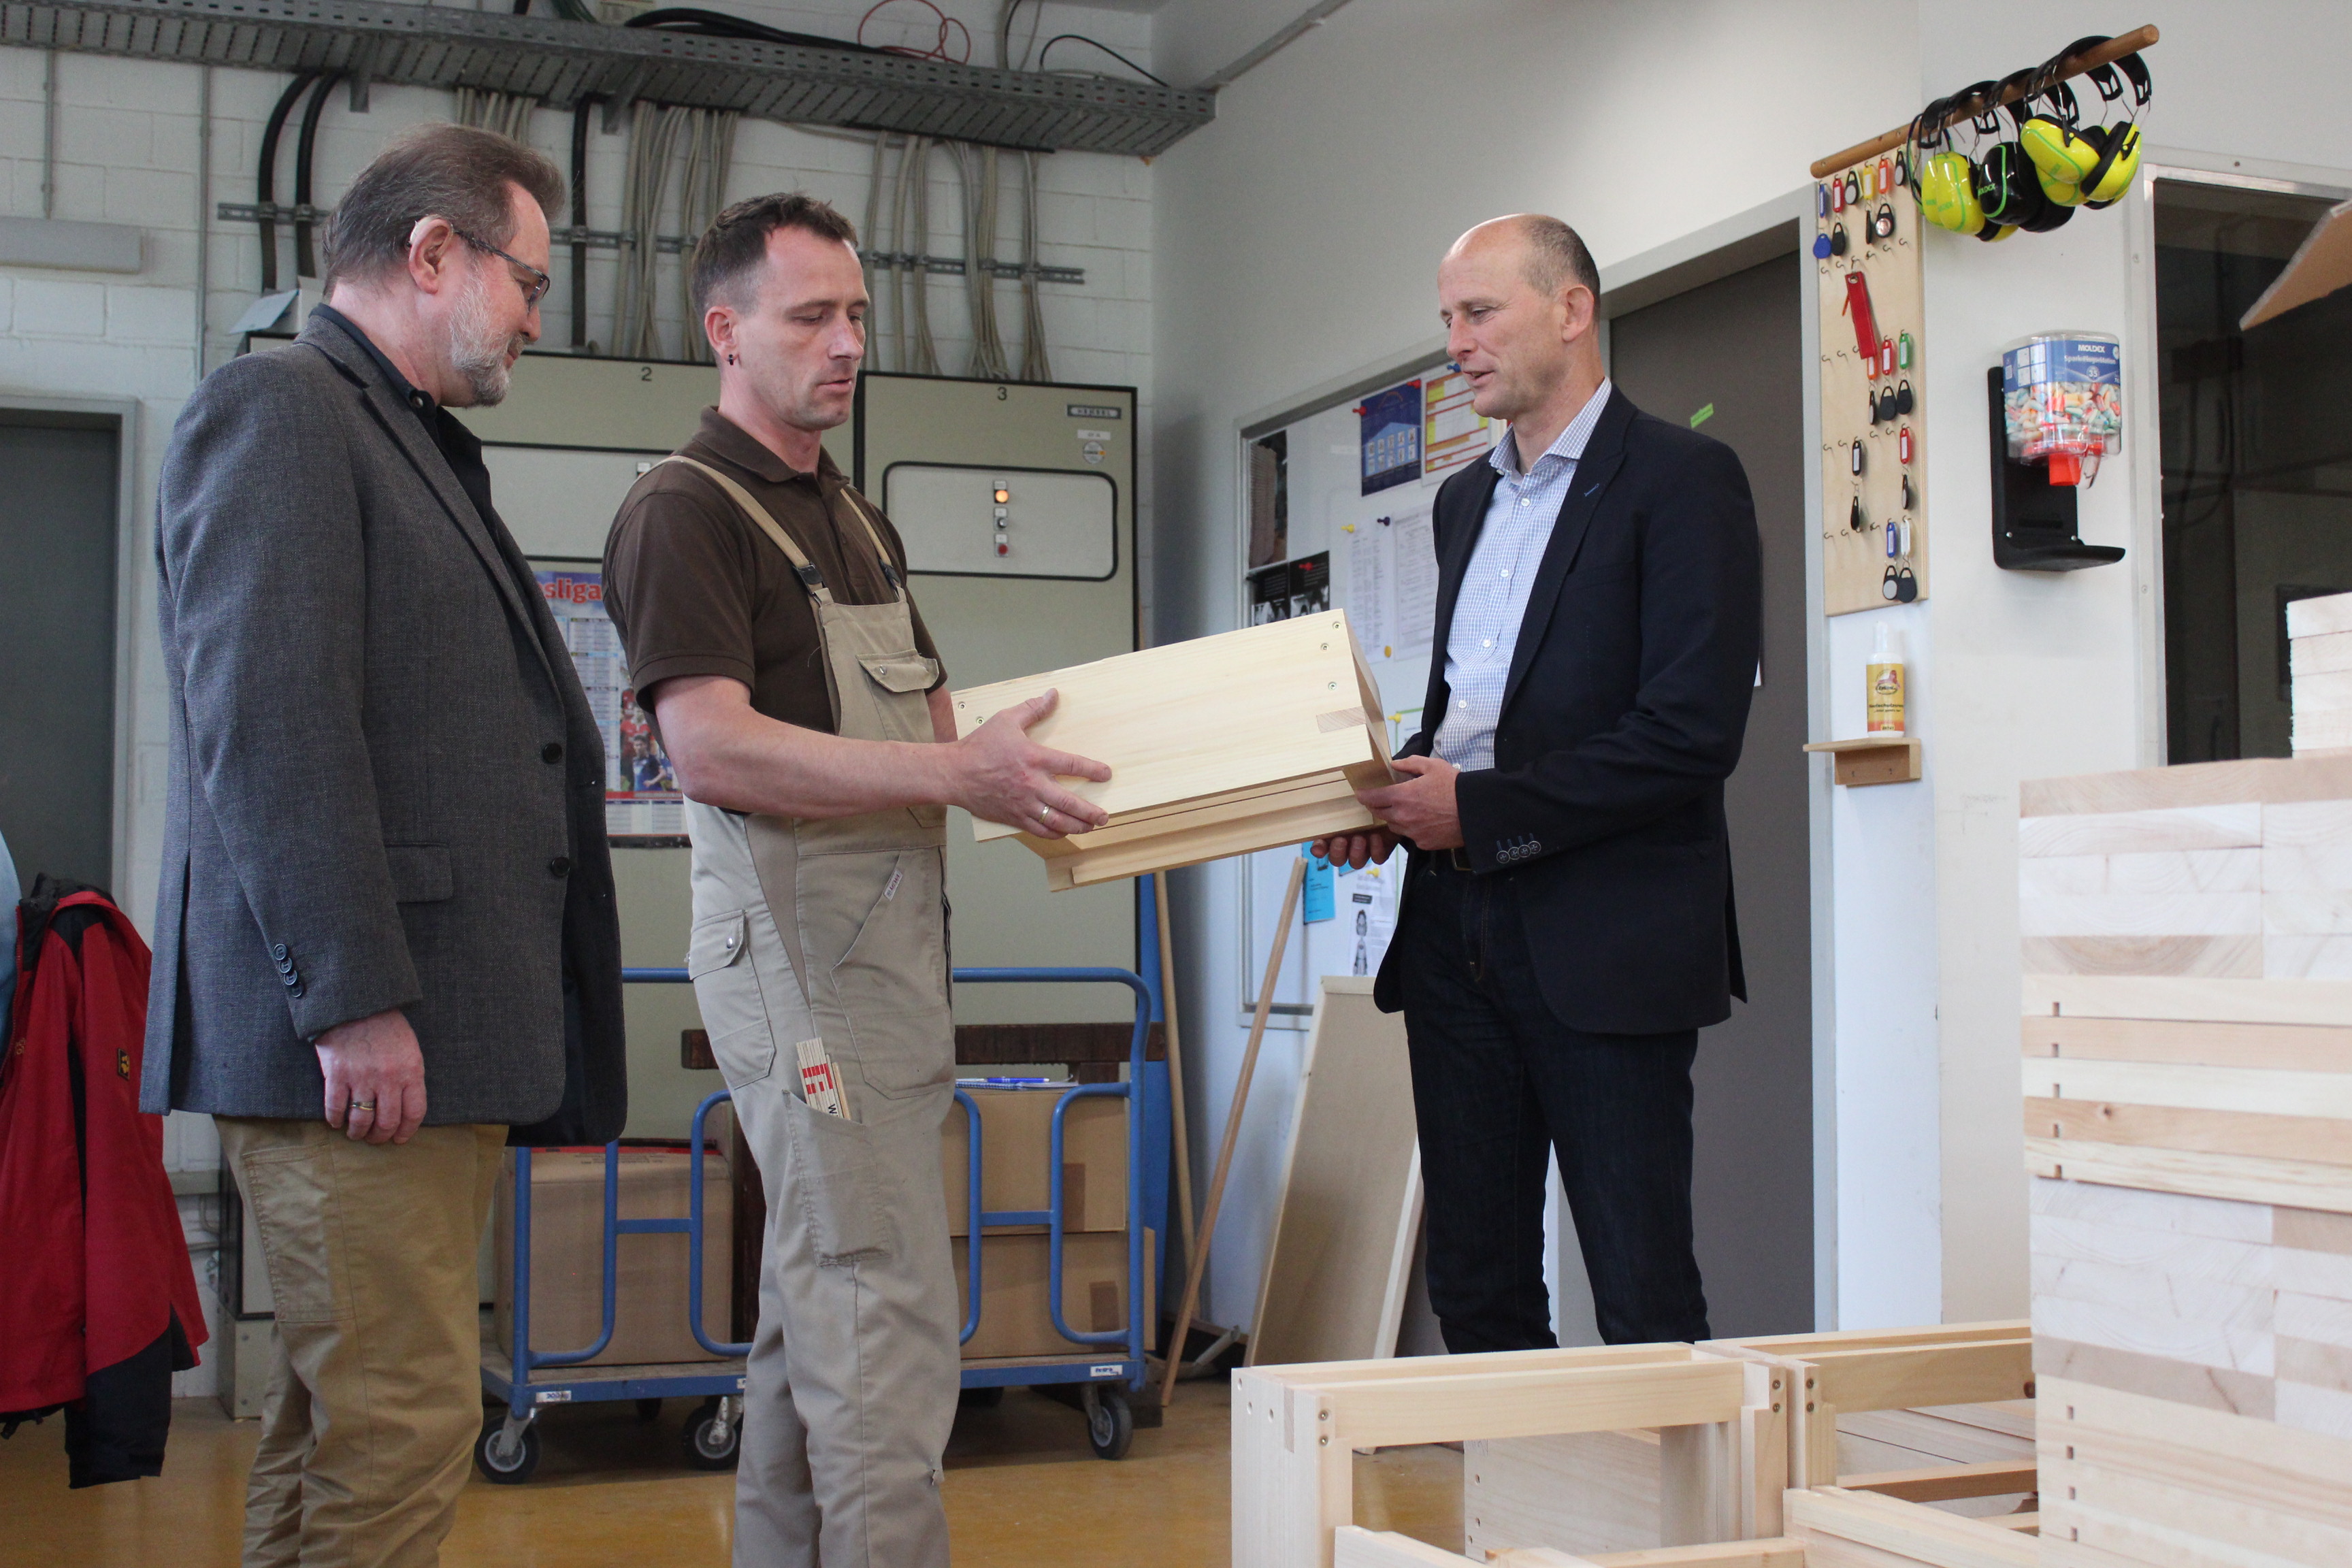 Volker Emde (r.) und Winfried Borkenhagen (l.) in der Tischlerei der Vogtlandwerkstätten. Hier entstehen die Imkereiprodukte, die Eigenmarke des Hauses sind.